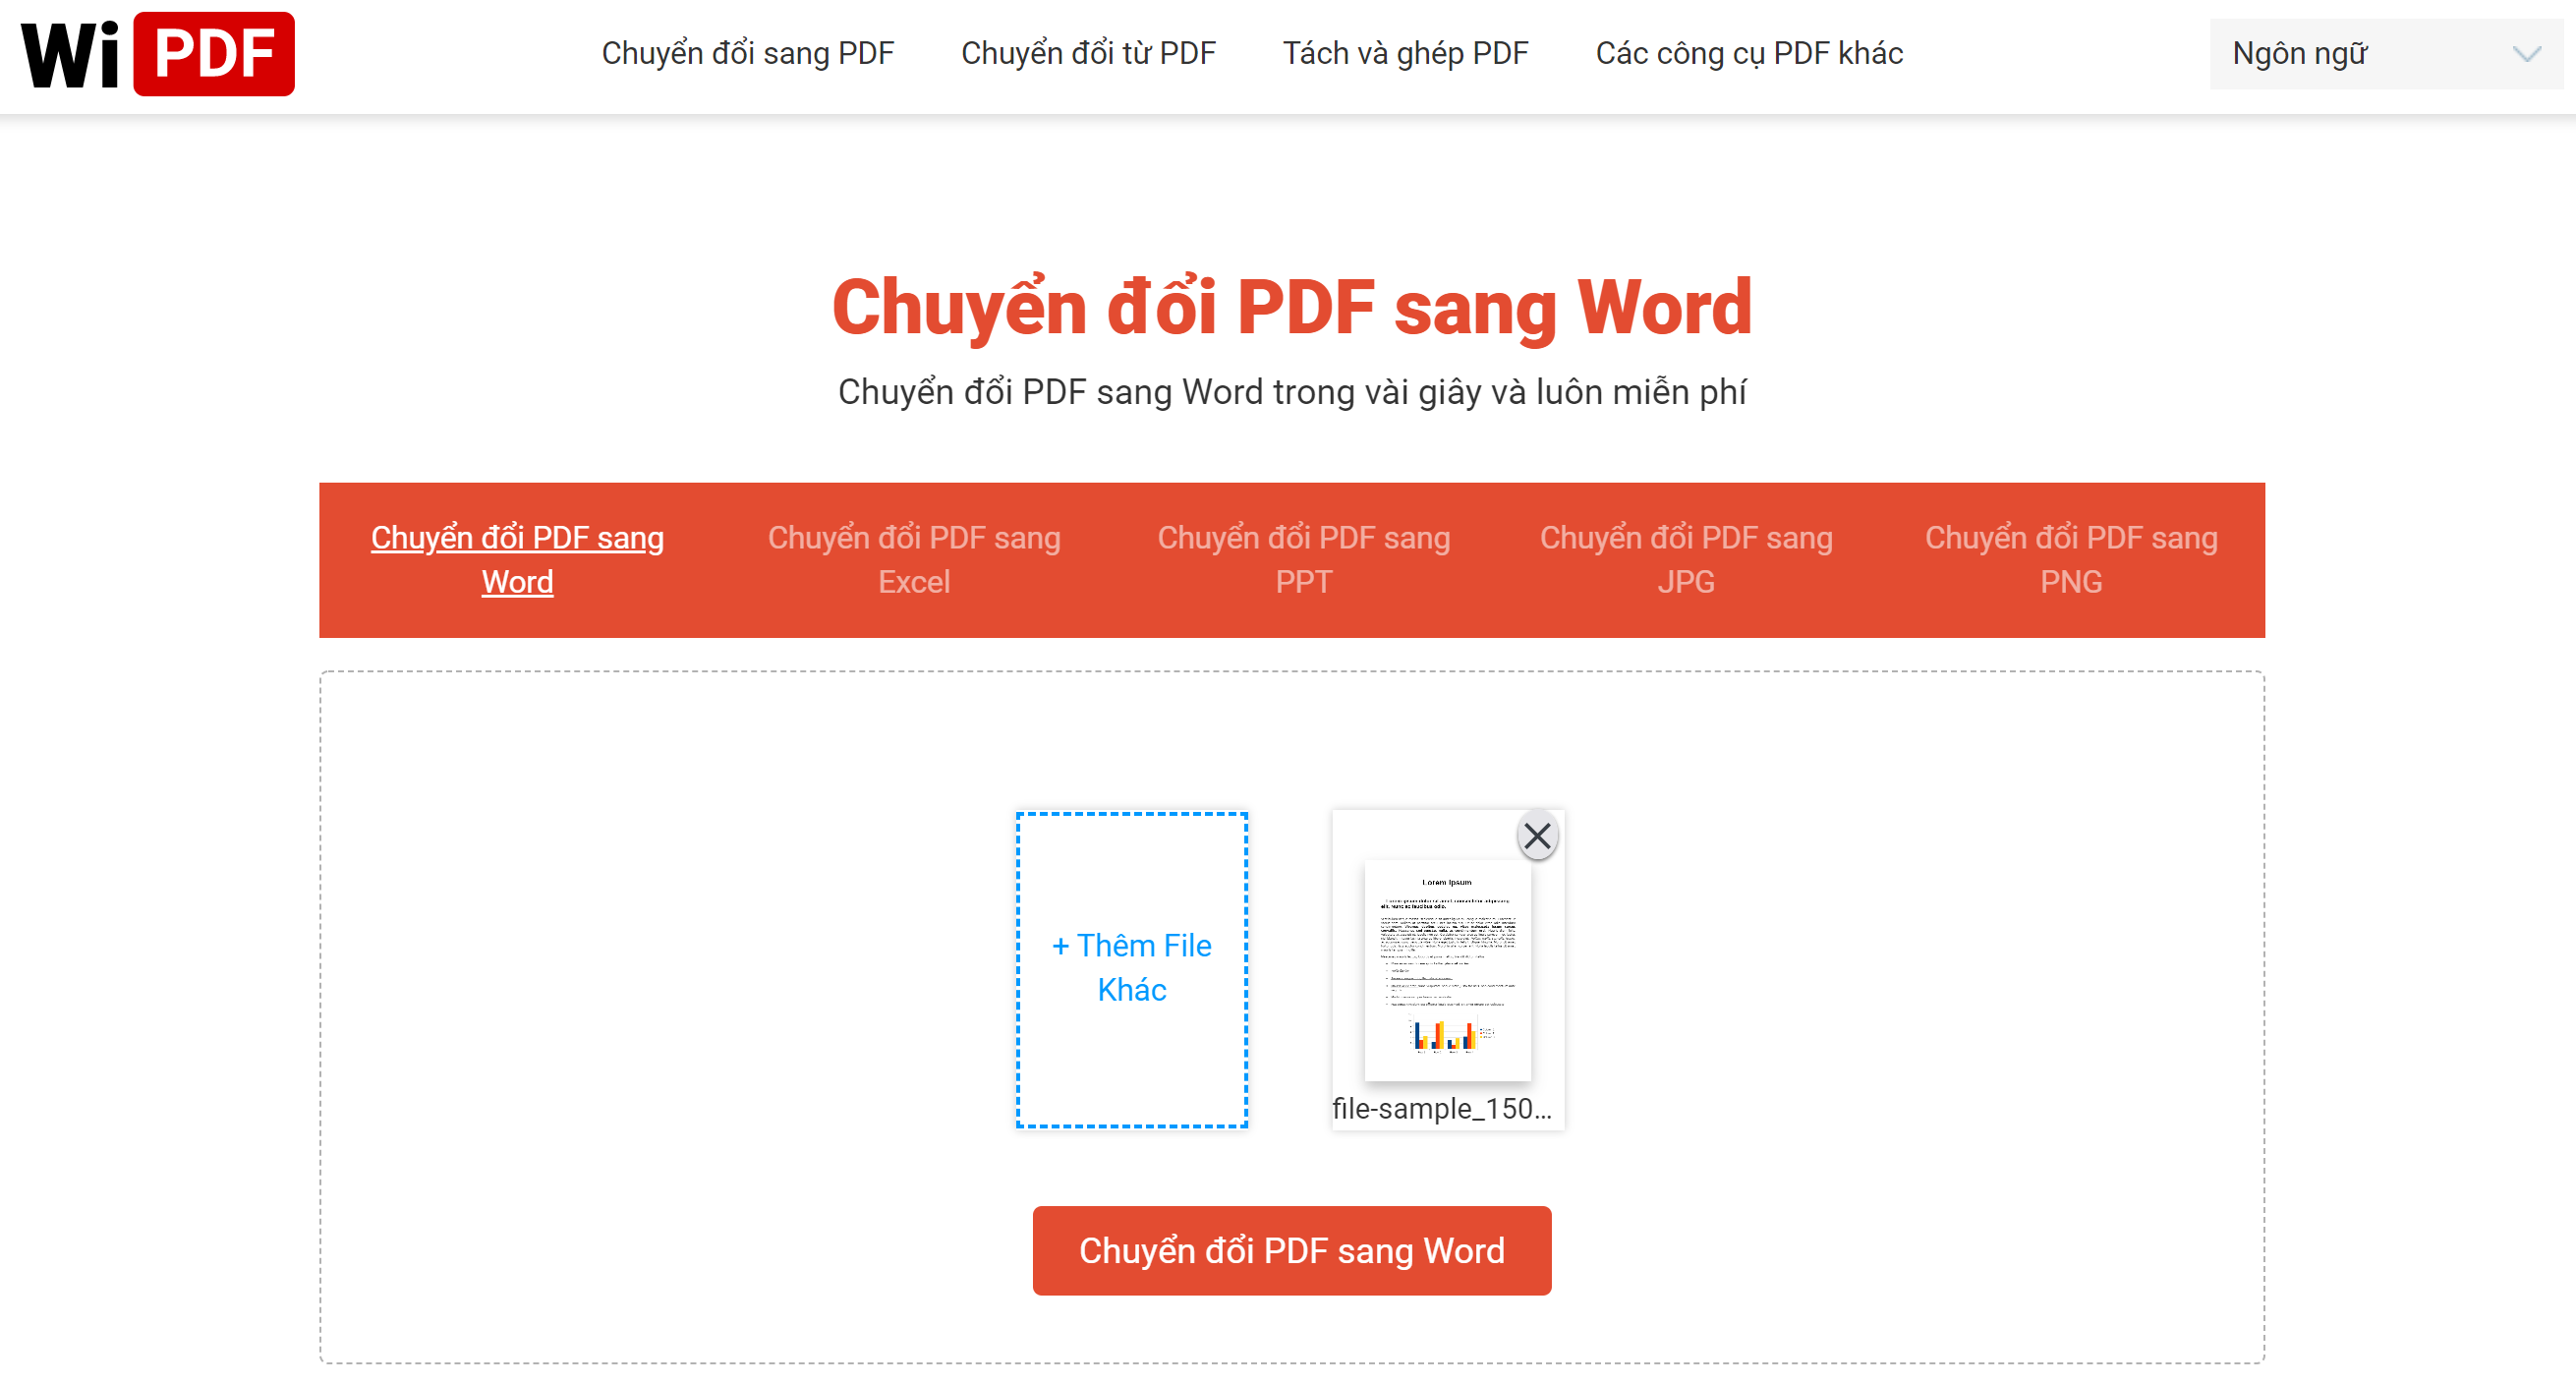 Chọn Chuyển đổi PDF sang Word